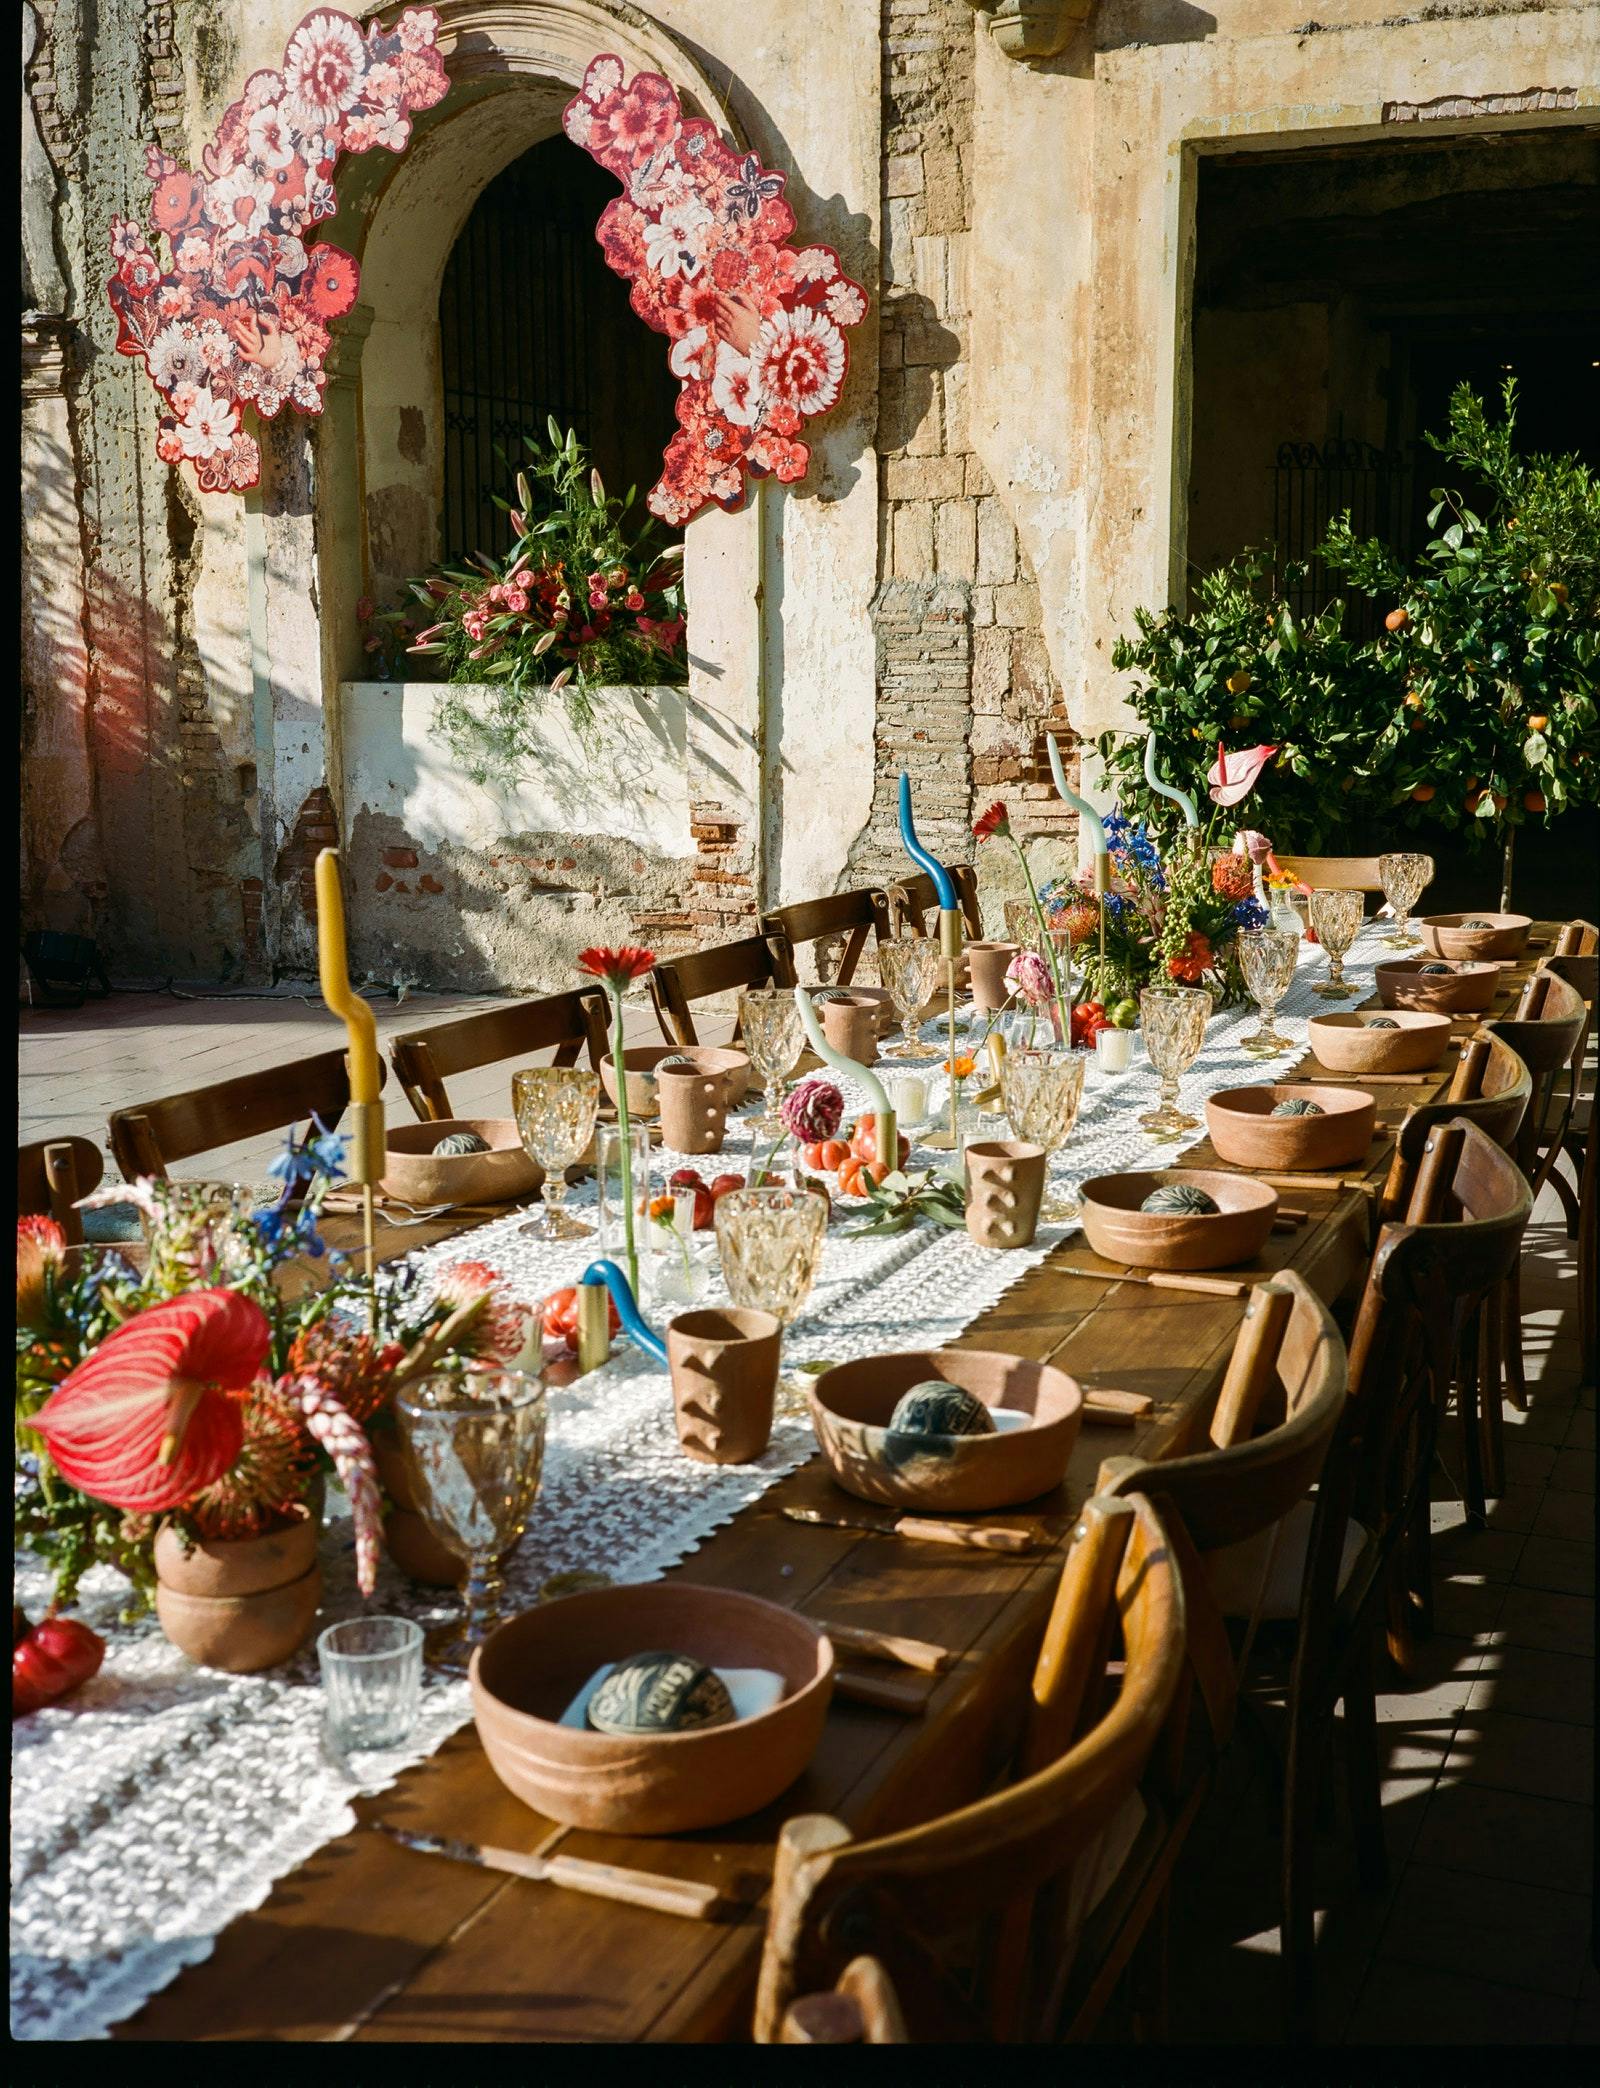 Un paysage de table de rêve issu de l'une des expériences culinaires intimes que Luis Felipe Rojas Molina organise à travers Tabula Rasa.